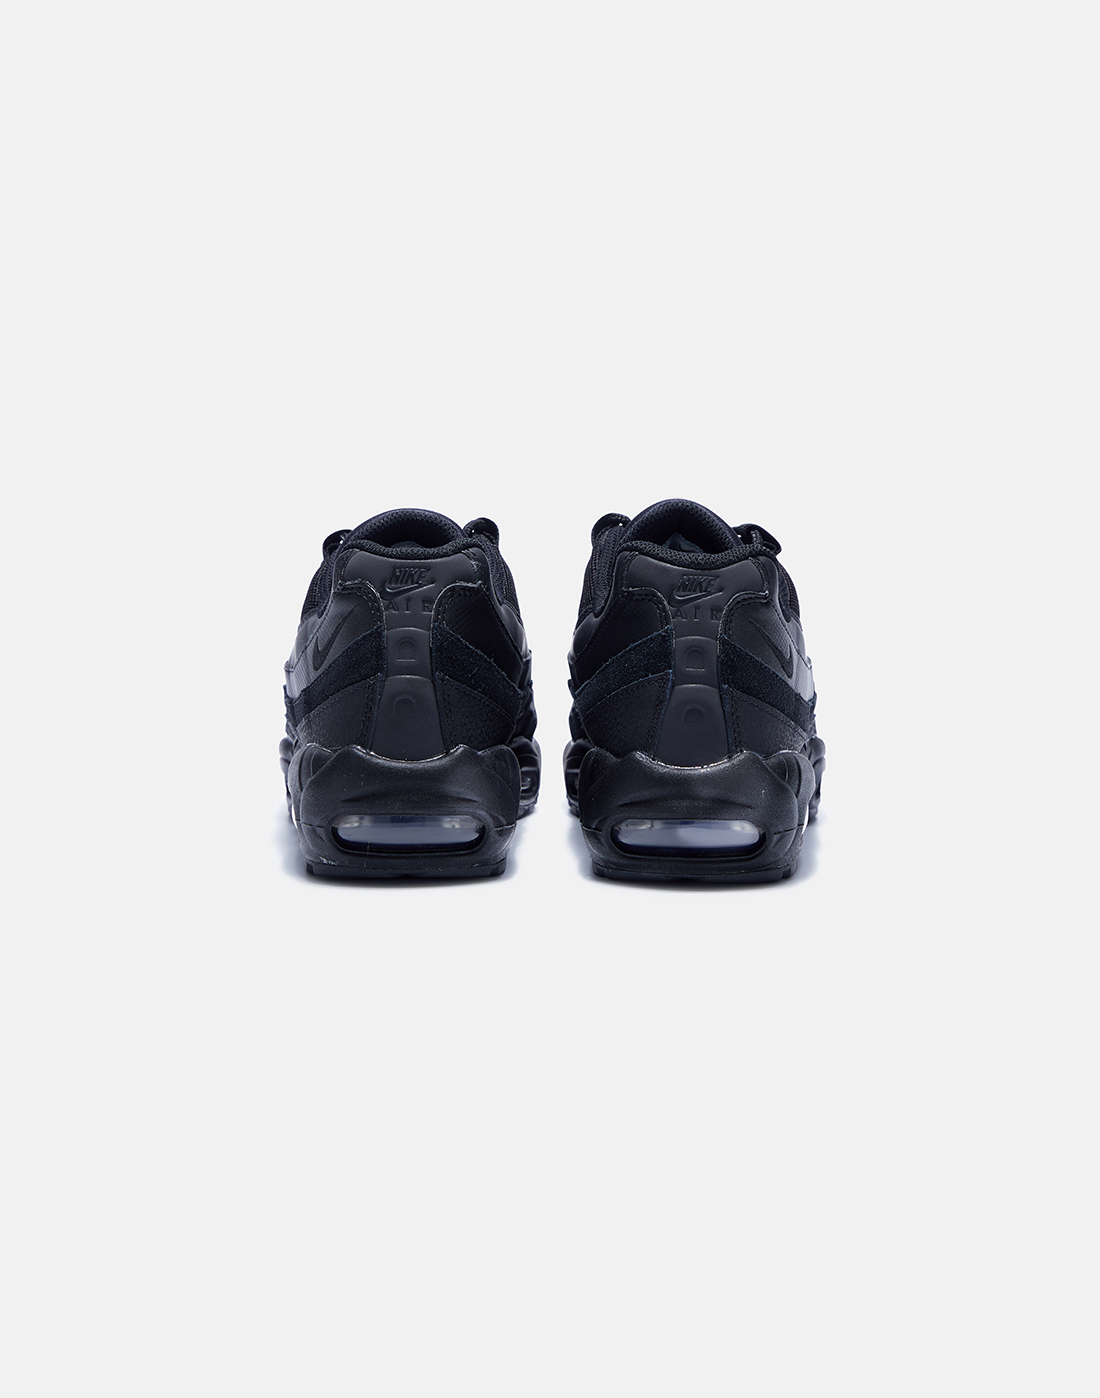 Black Nike Air Max 95 - Men